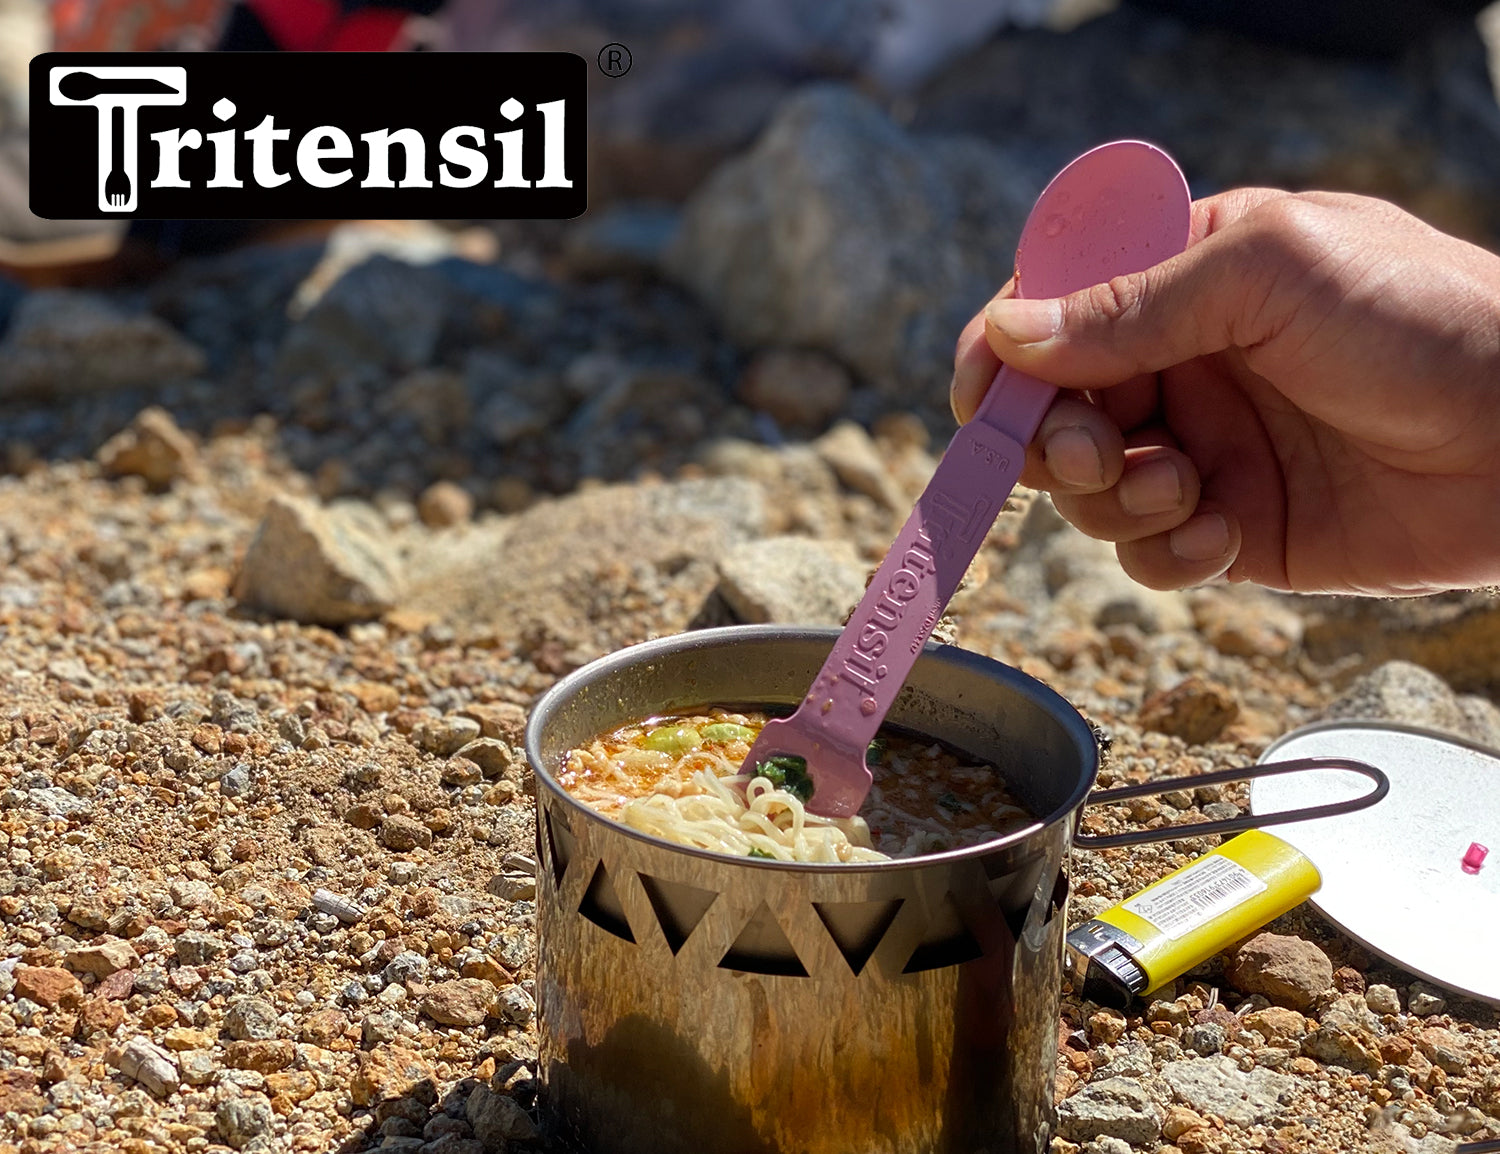 Tritensil Spoon & Folk/Knife